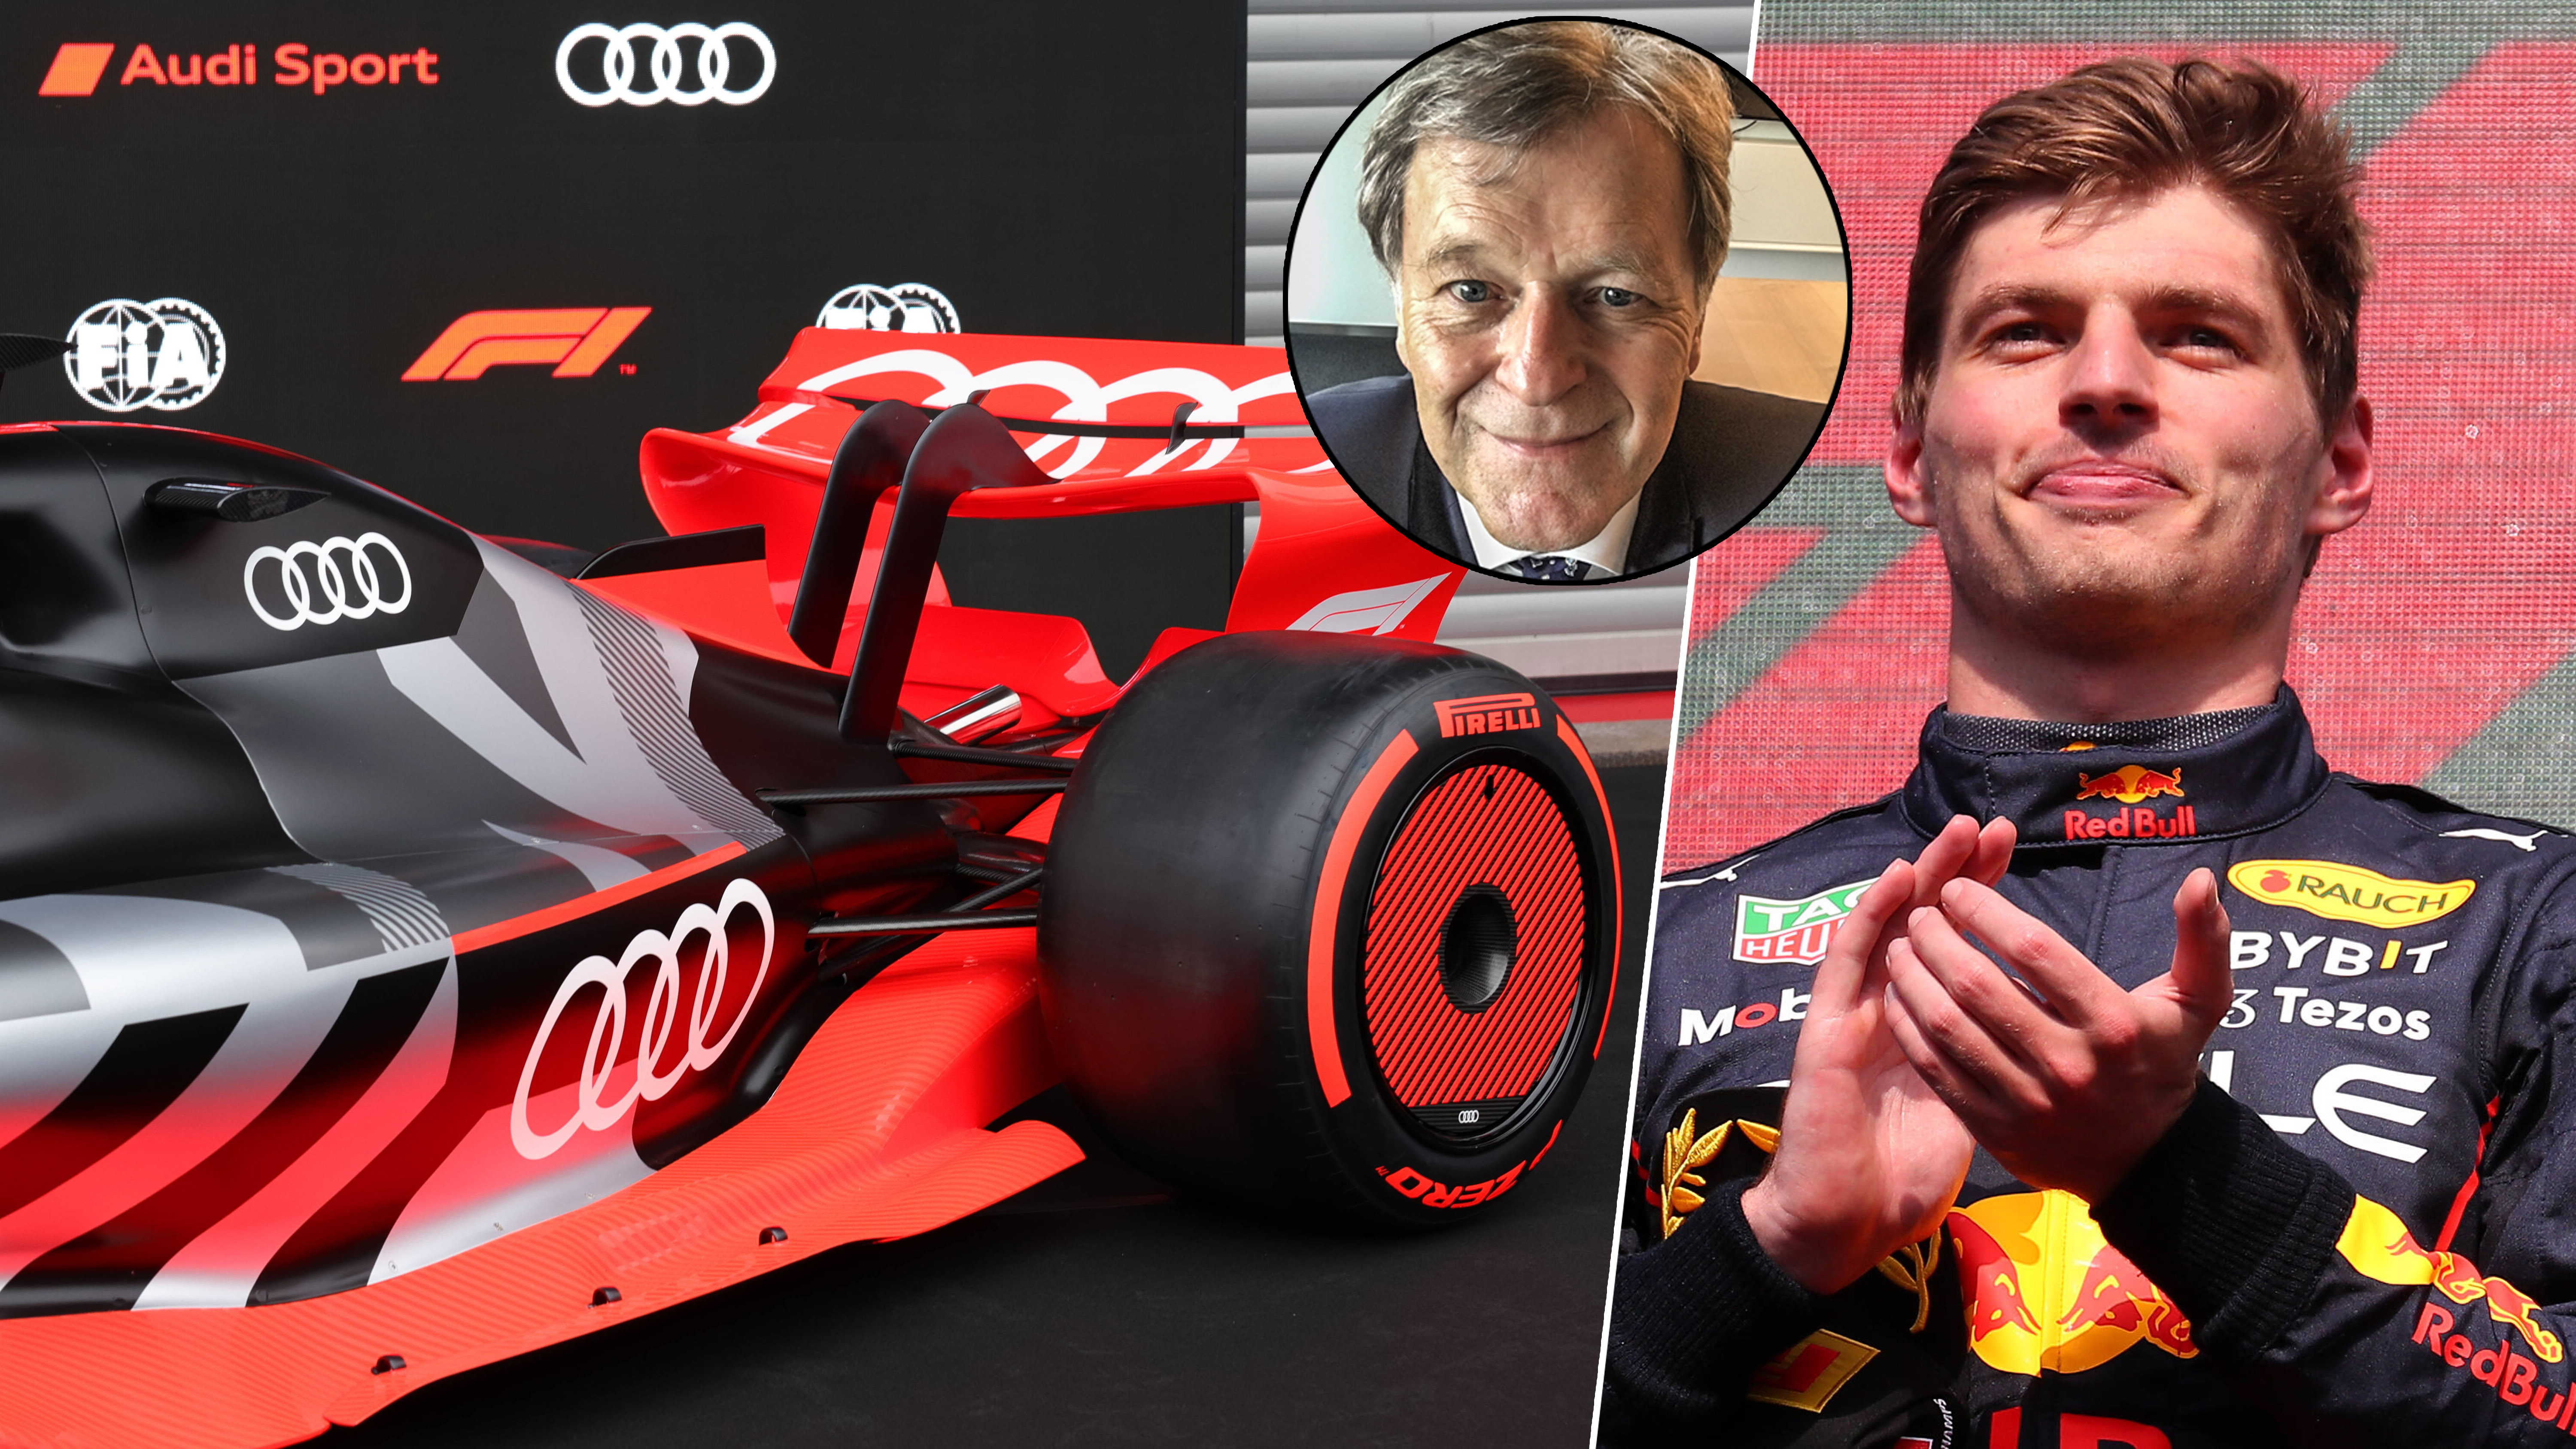 Thesen zum F1-Monat mit Norbert Haug Freude über Audi-Einstieg, Großes Lob für Verstappen